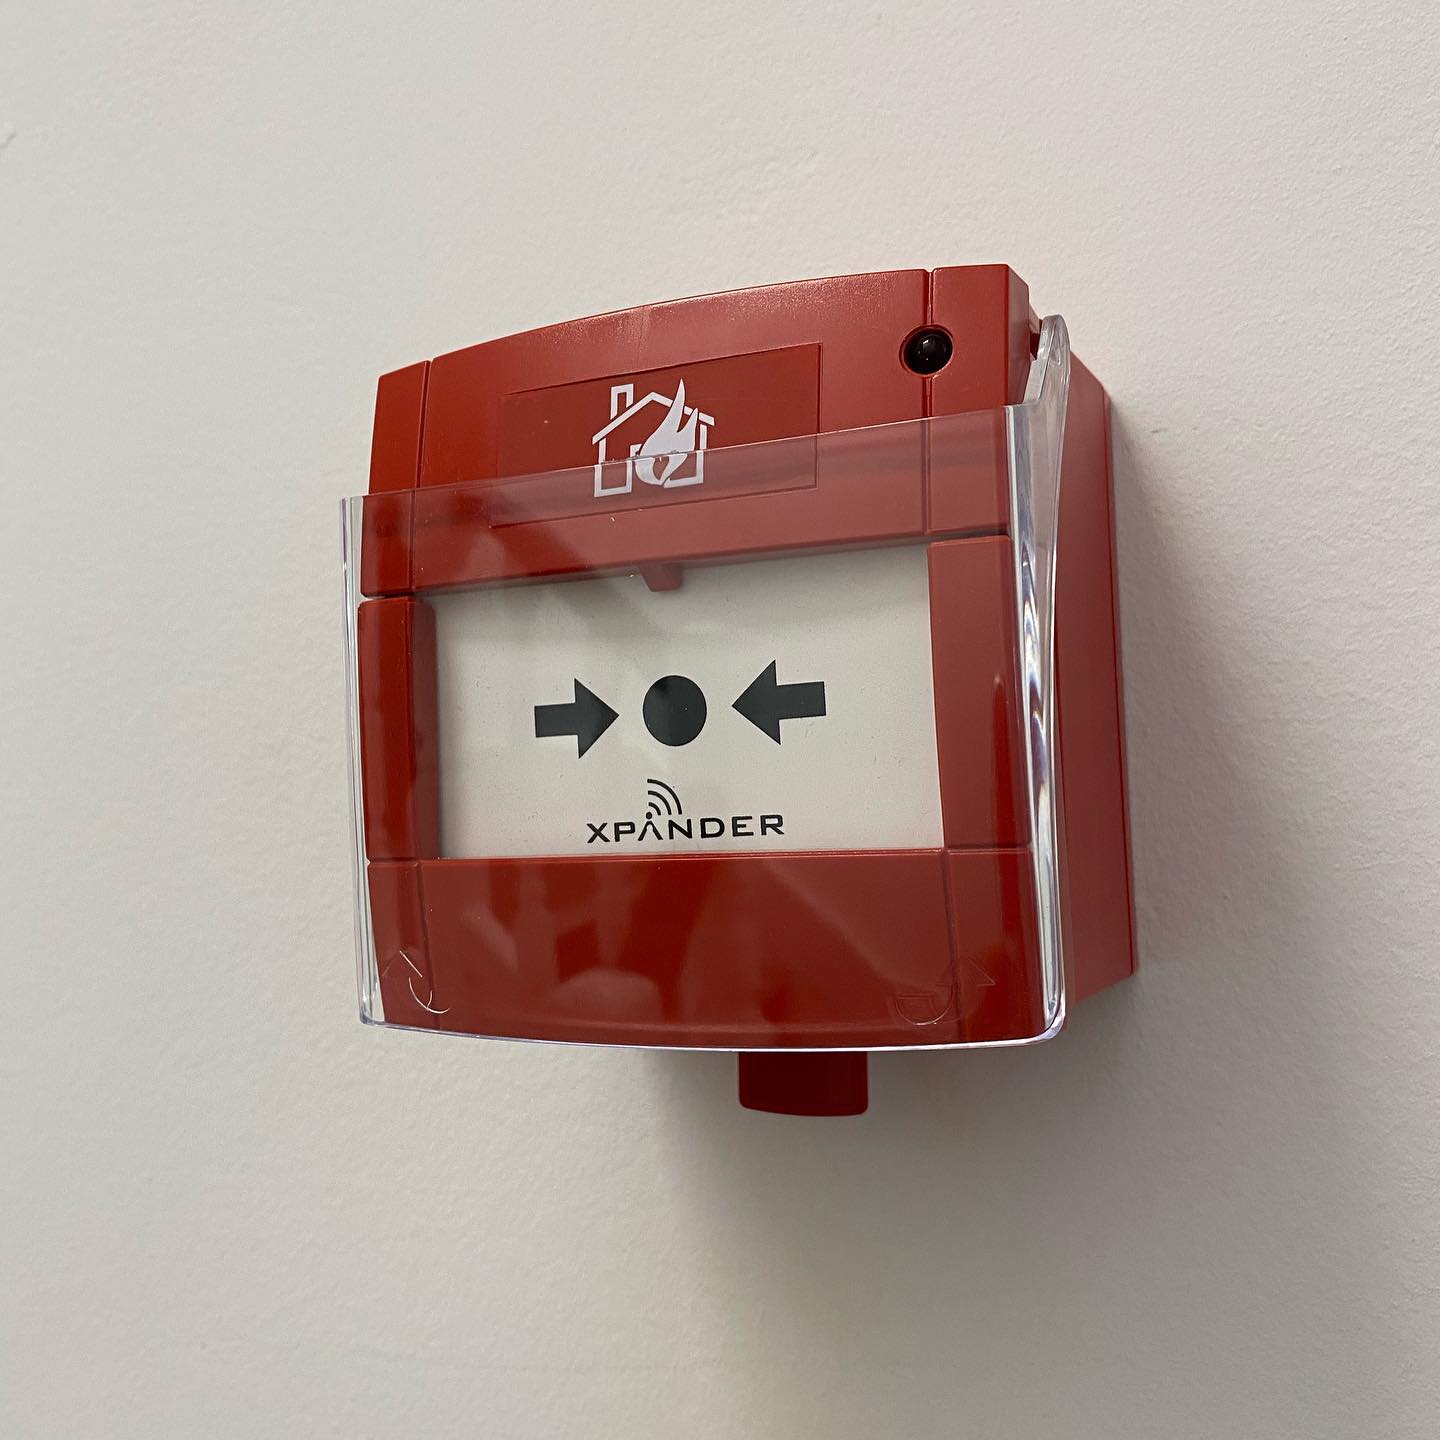 Addressable Fire Alarm Installer Chester